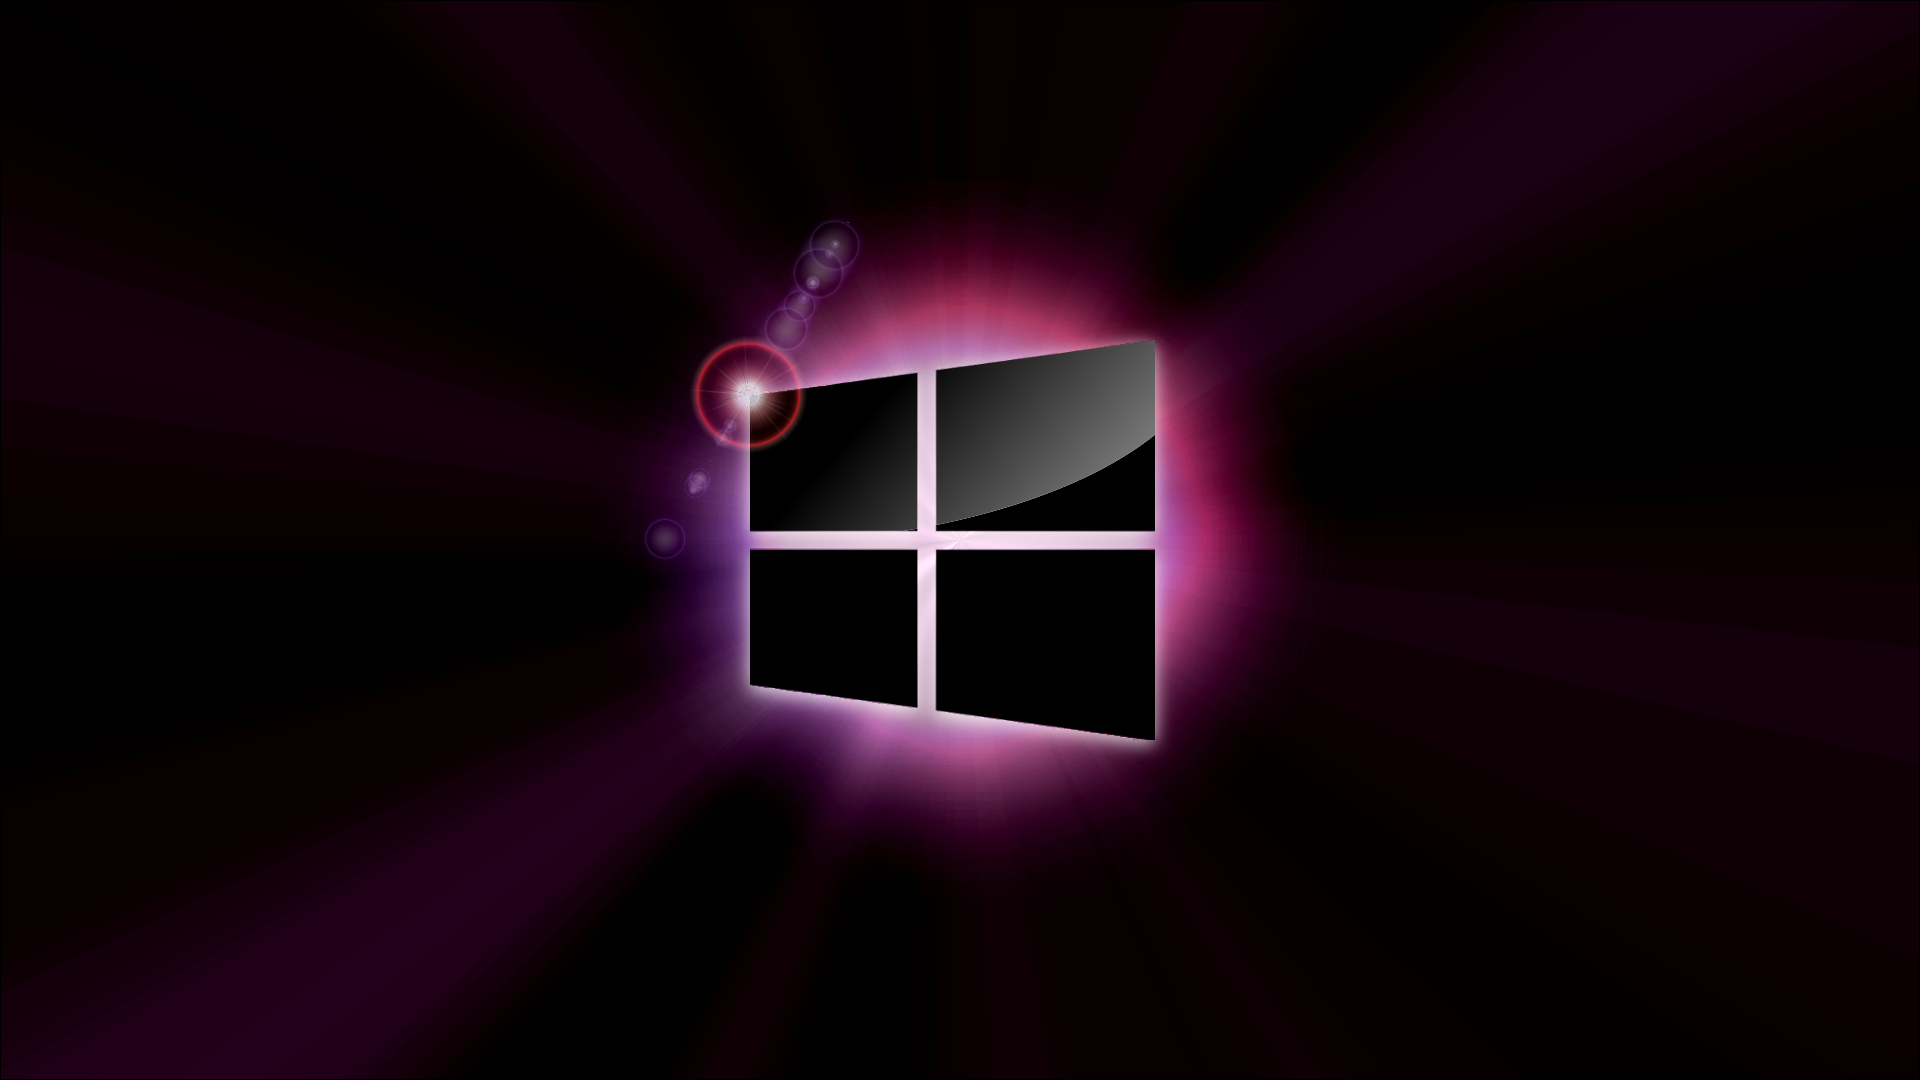 Windows 8 Full HD Tapeta and Tło | 1920x1080 | ID:461345